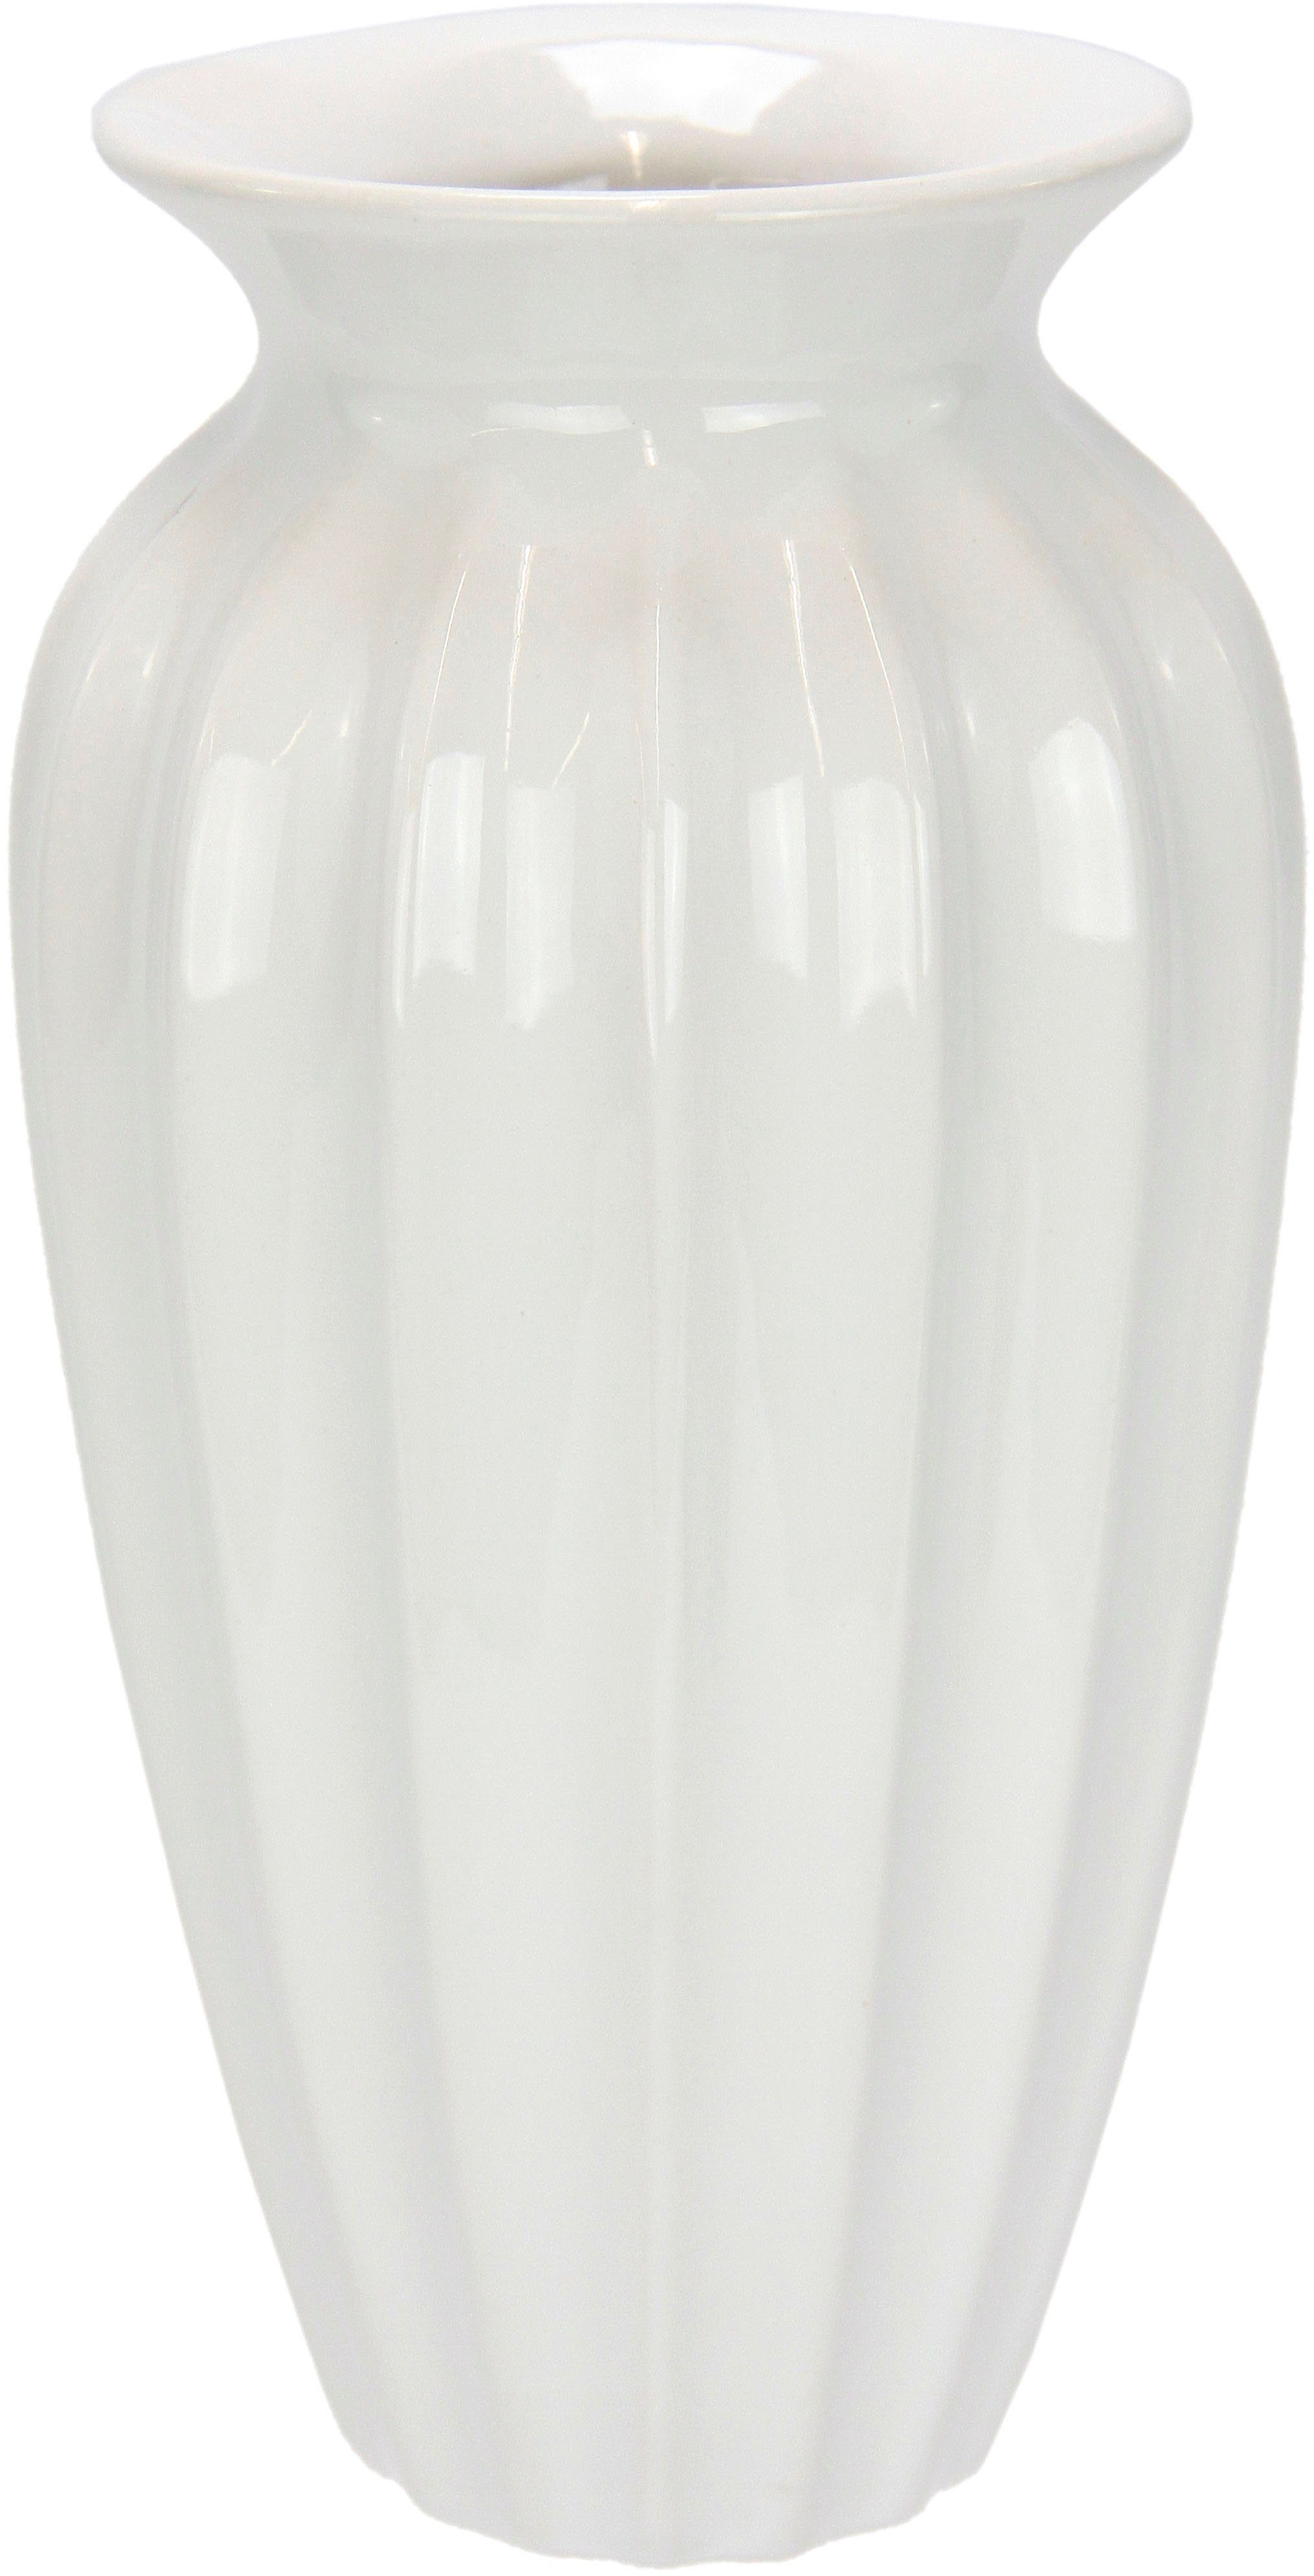 Bis zu 90 % Rabatt! Vase, Keramik, groß Dekovase Keramik rund I.GE.A. Aus